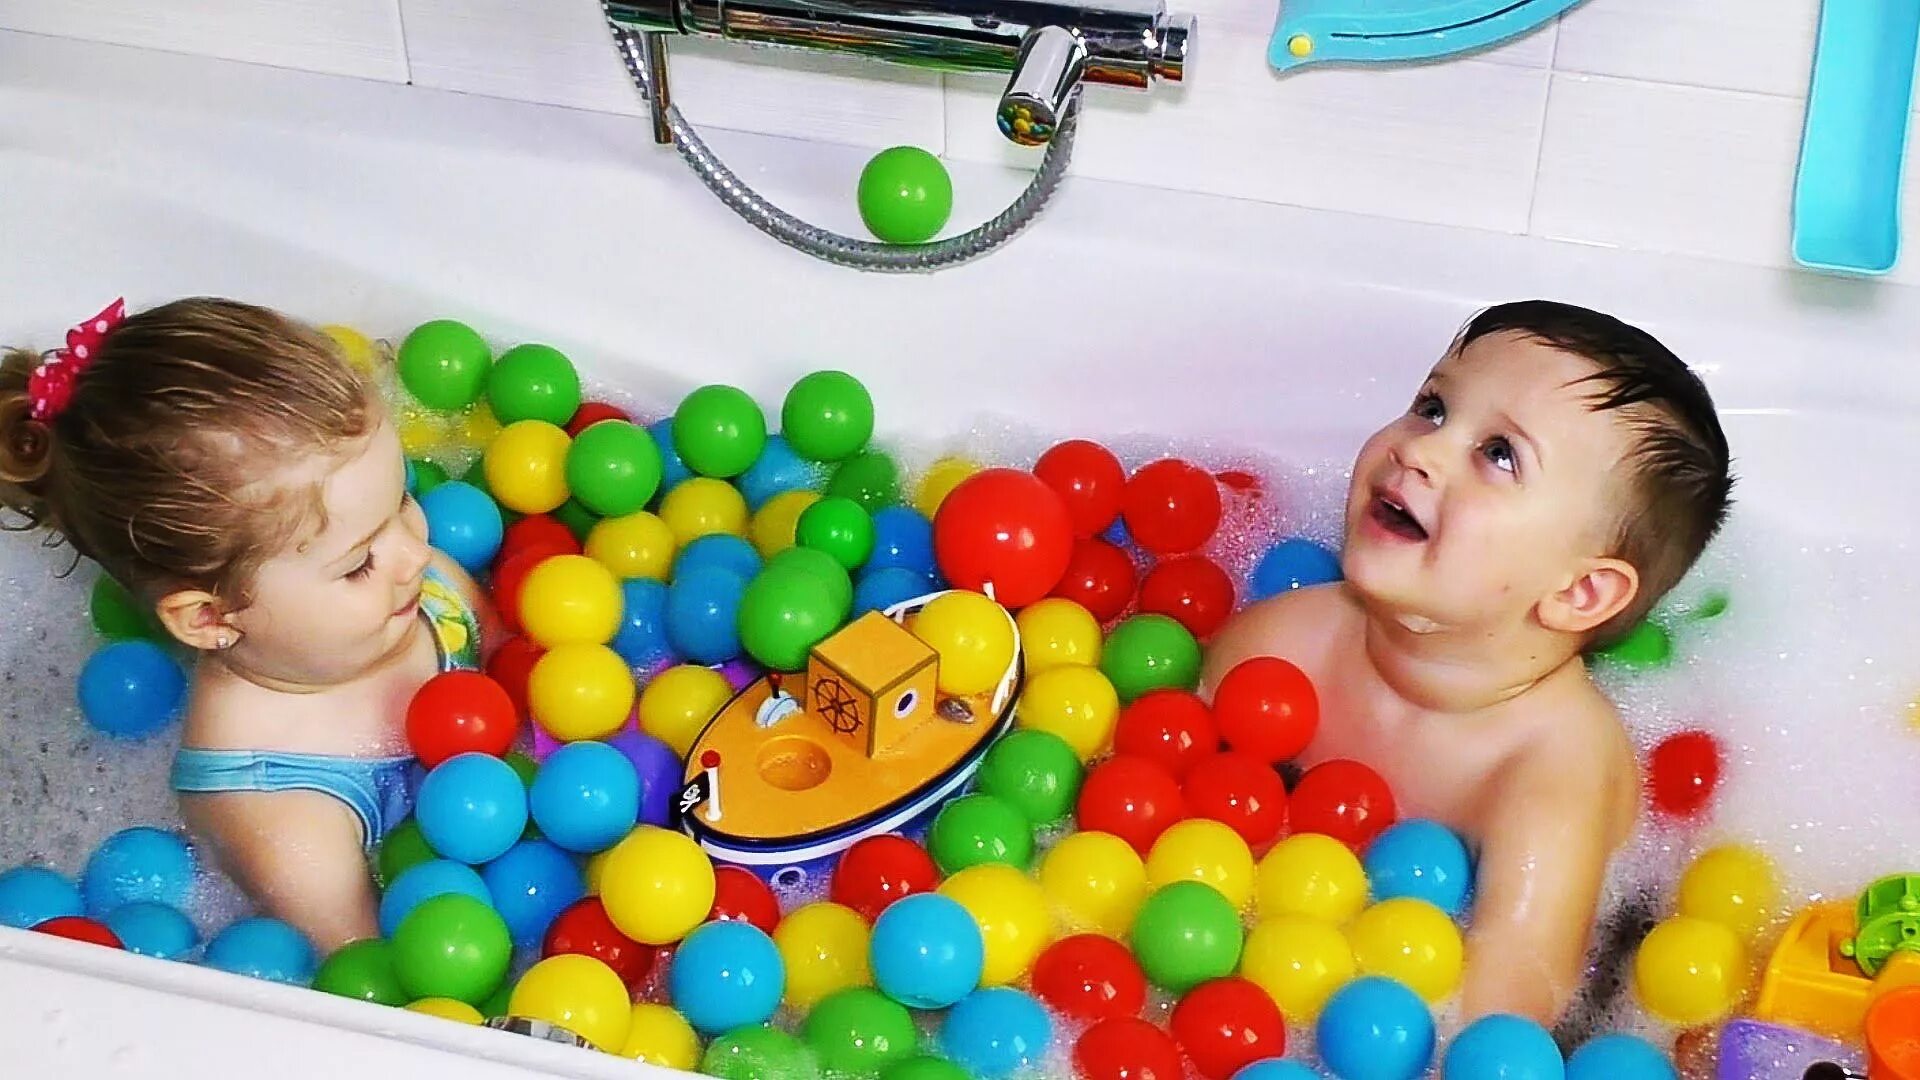 Игрушка для ванны. Игрушки для купания малышей. Развлечение в ванной для детей. Шарики для купания в ванной для детей. 1 развлечения